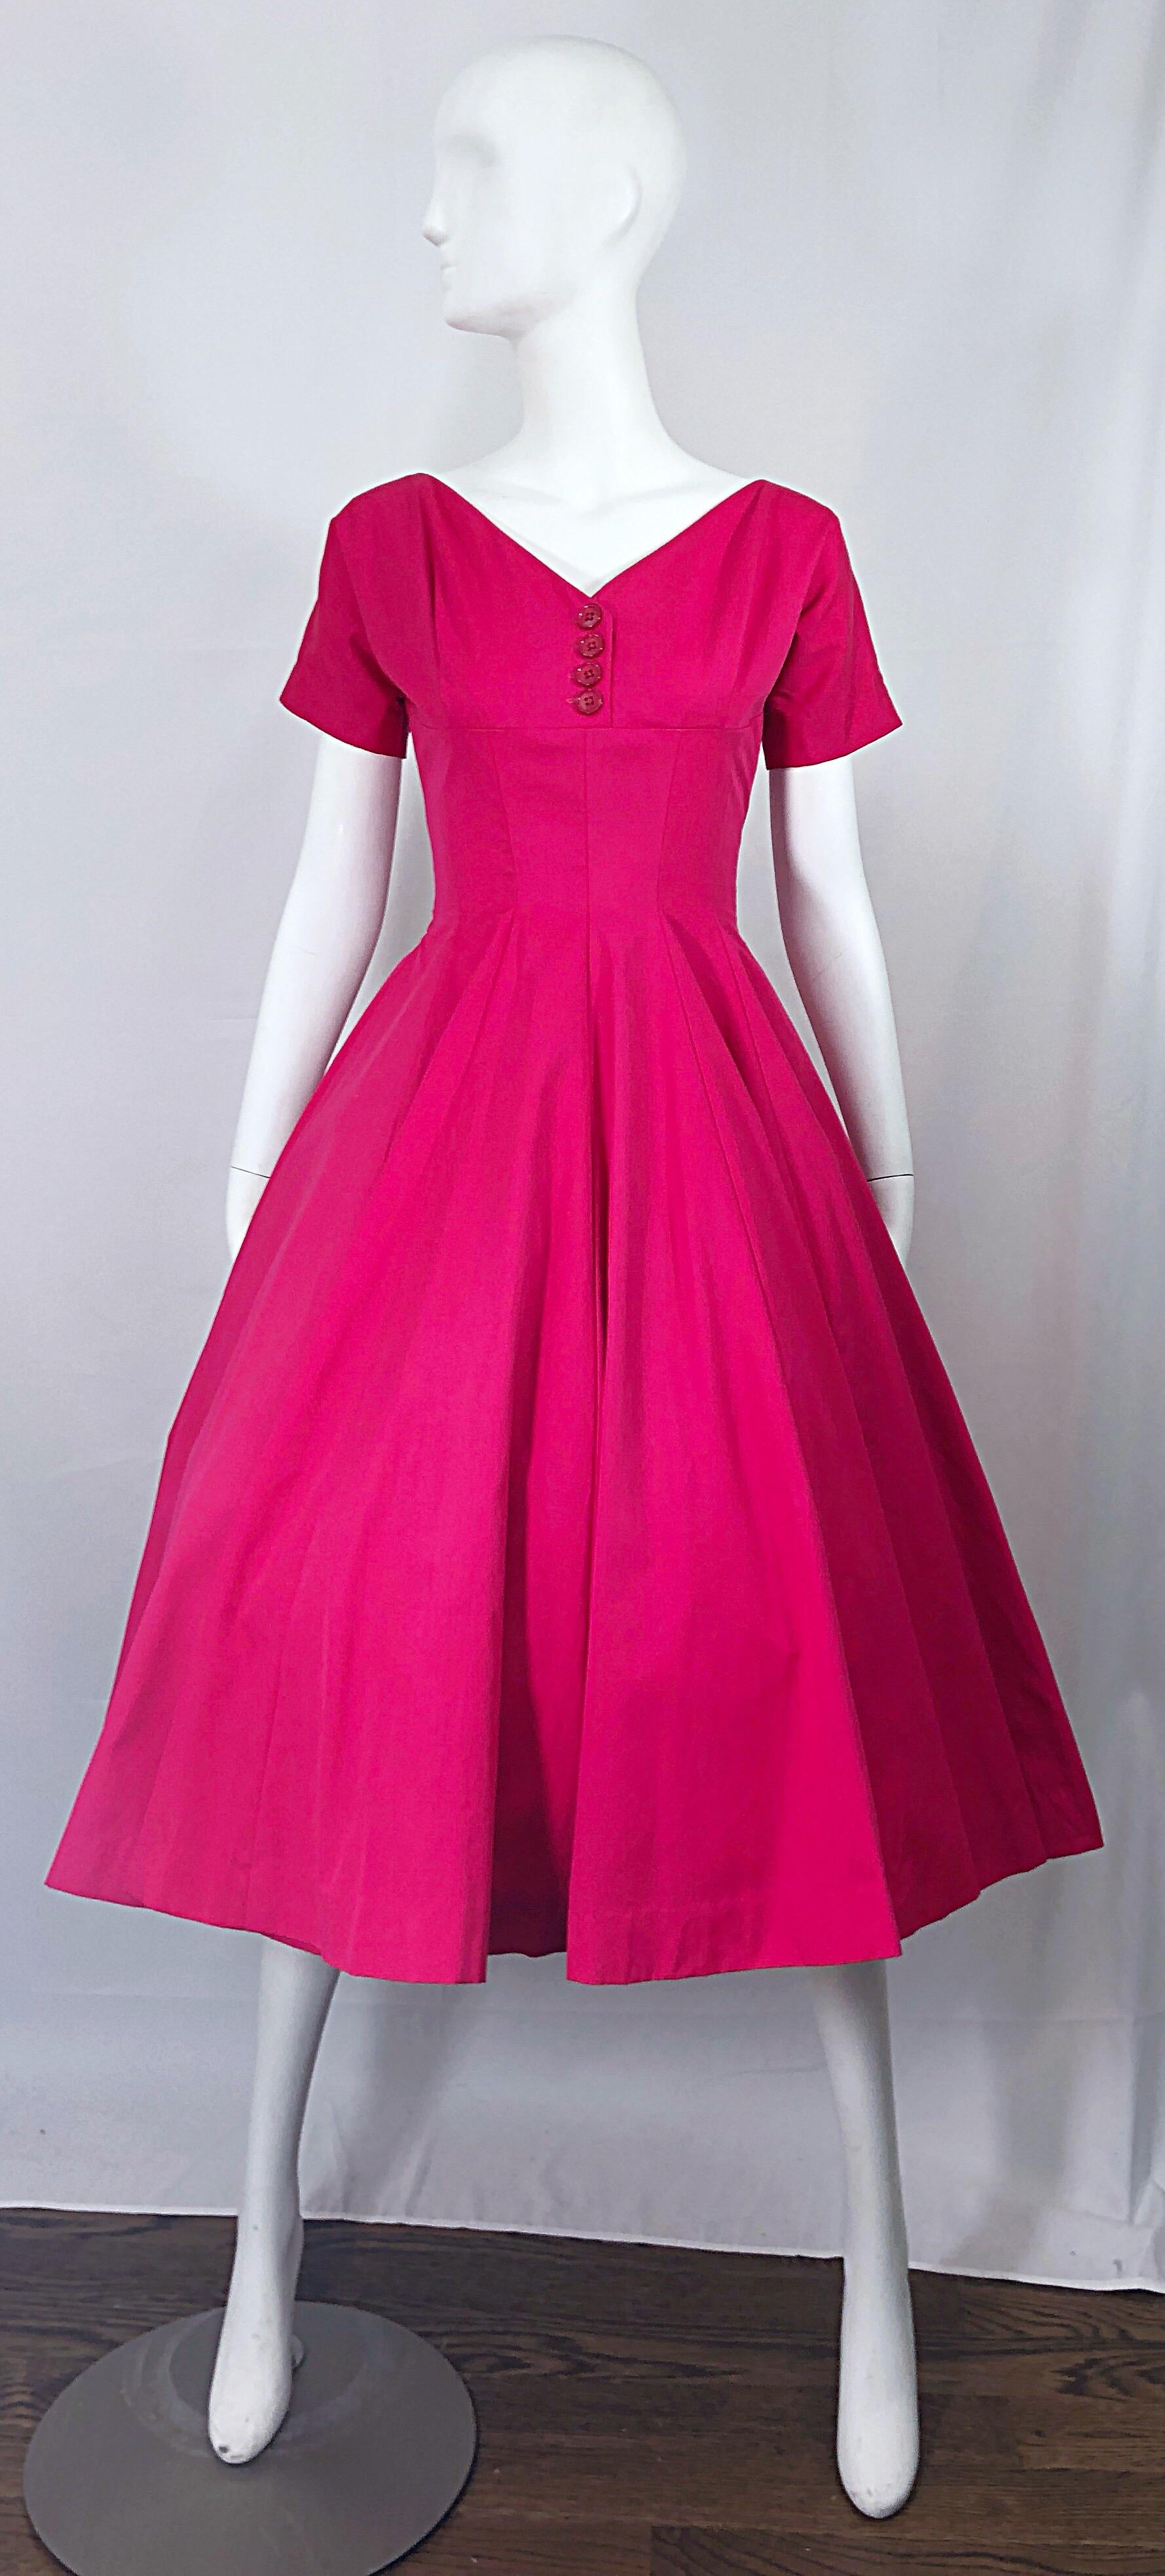 Wunderschönes 1950er ANNE FOGARTY rosa Seide / Rayon fit n' flare 'New Look' Cocktailkleid! Es hat ein tailliertes Mieder mit rosa Knöpfen in der Mitte der Büste. Der schmeichelhafte volle Rock kann mit einem Reifrock für zusätzliche Fülle versehen